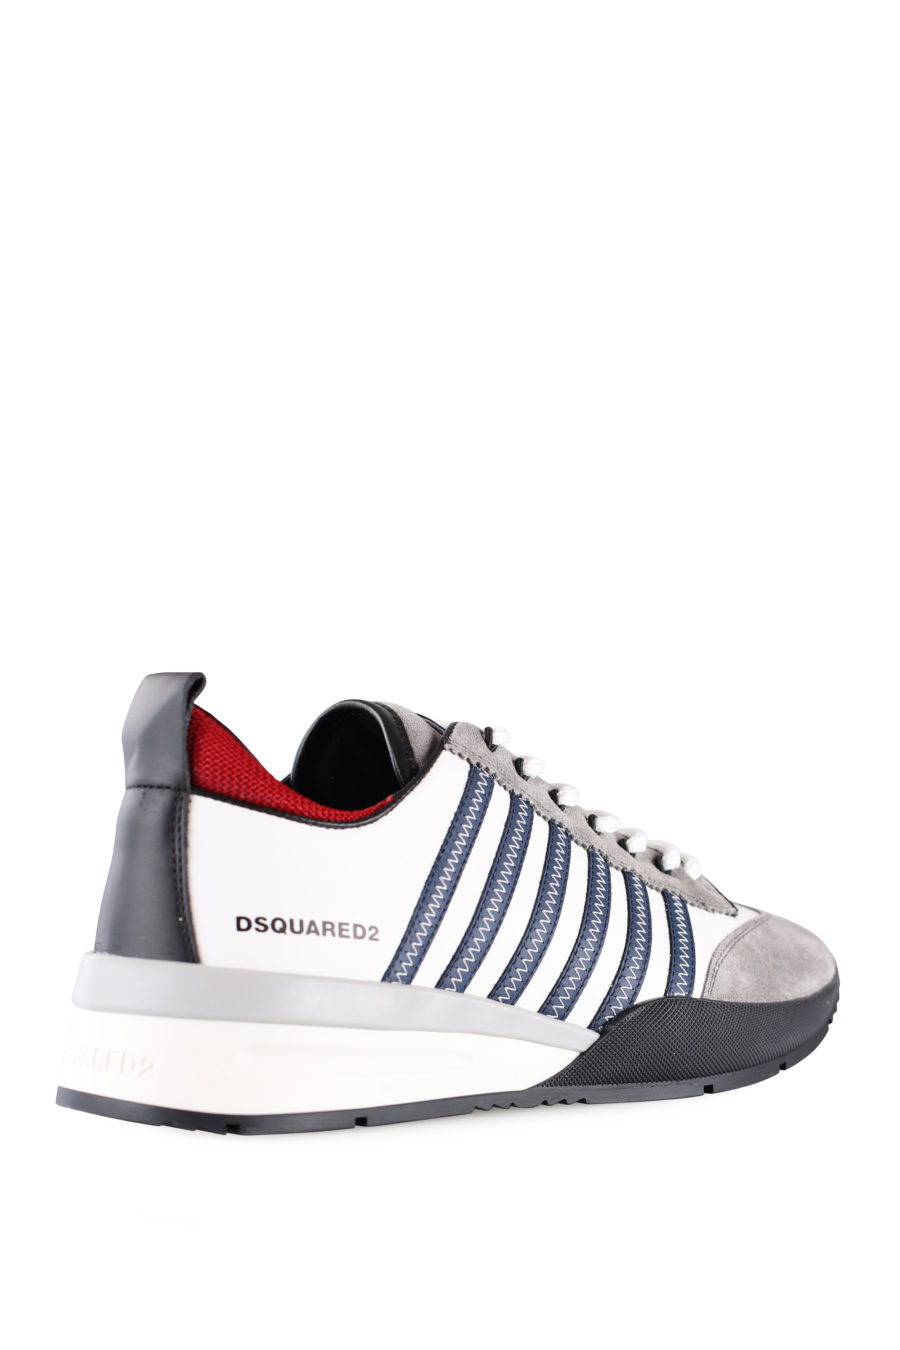 Weiße und graue Turnschuhe mit blauen Linien und roten Details - IMG 0010